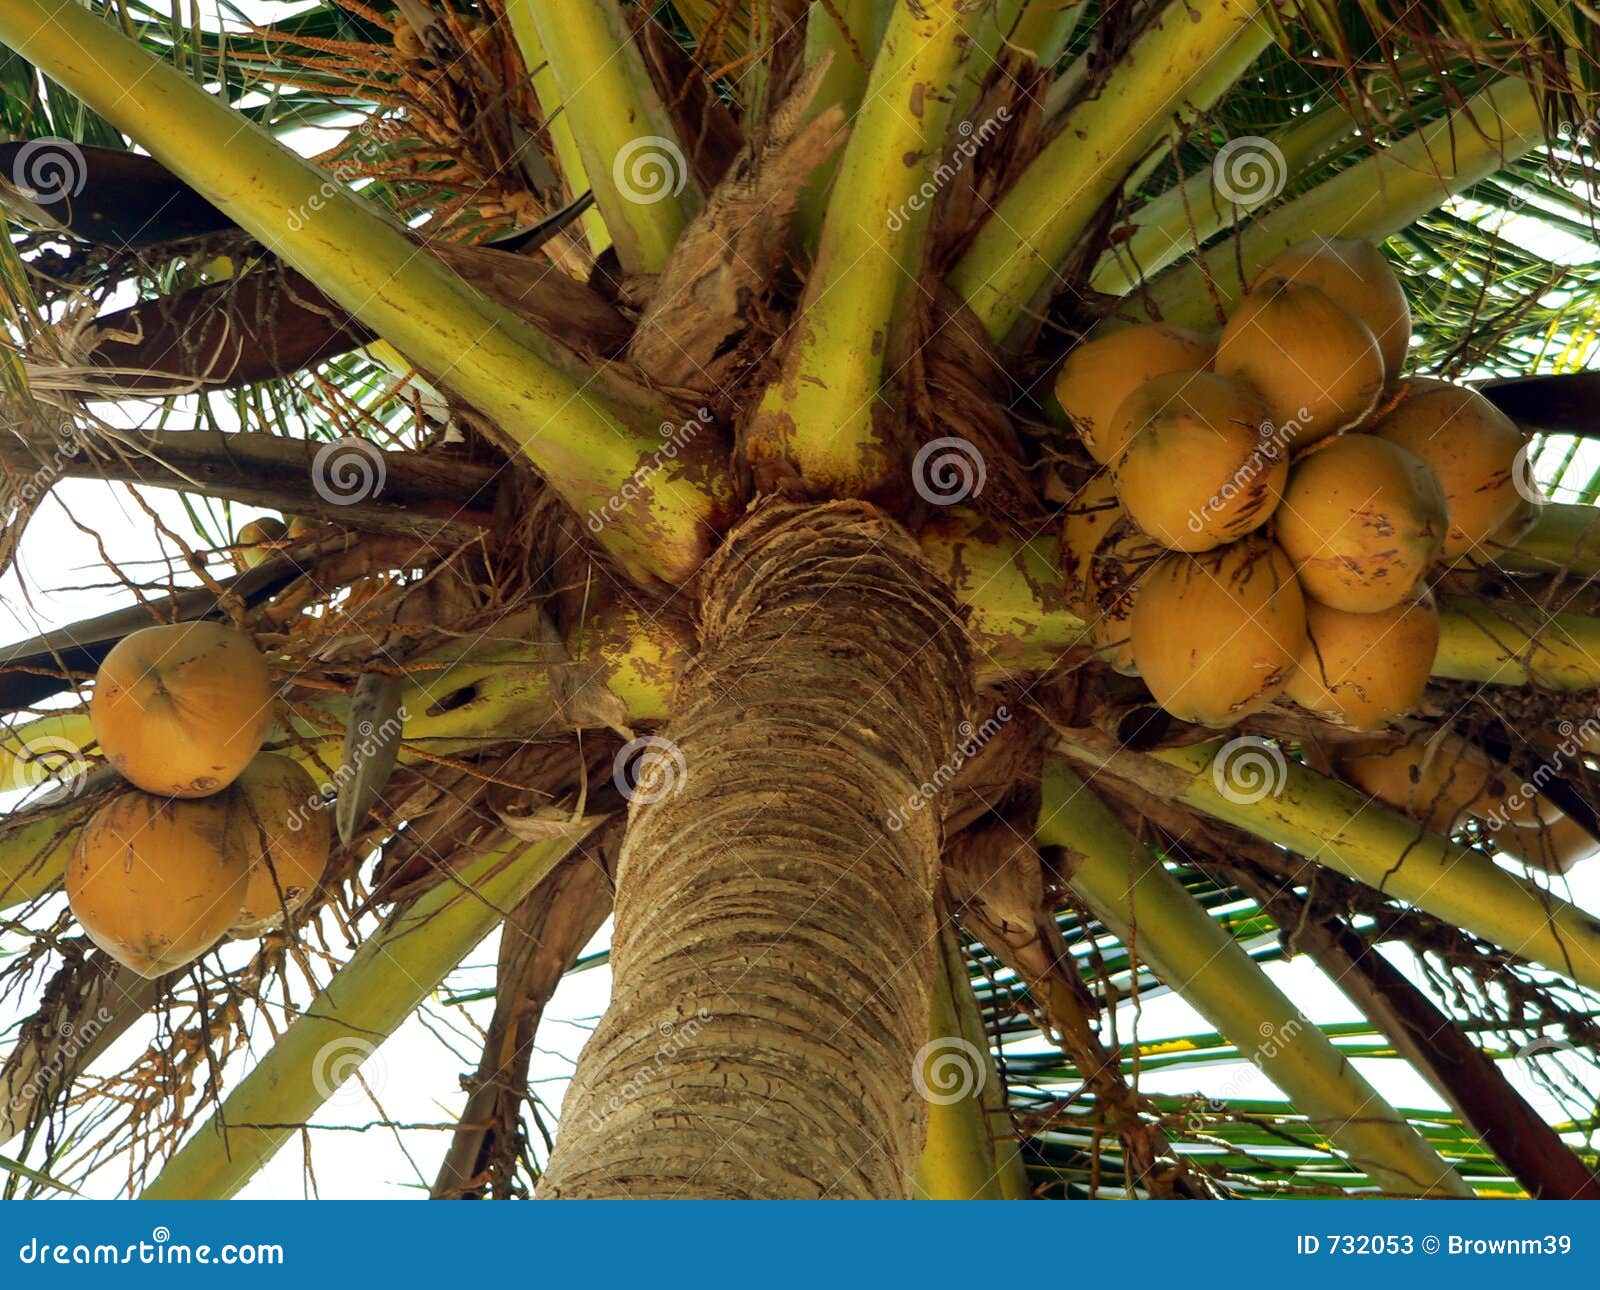 nearly ripe coconuts